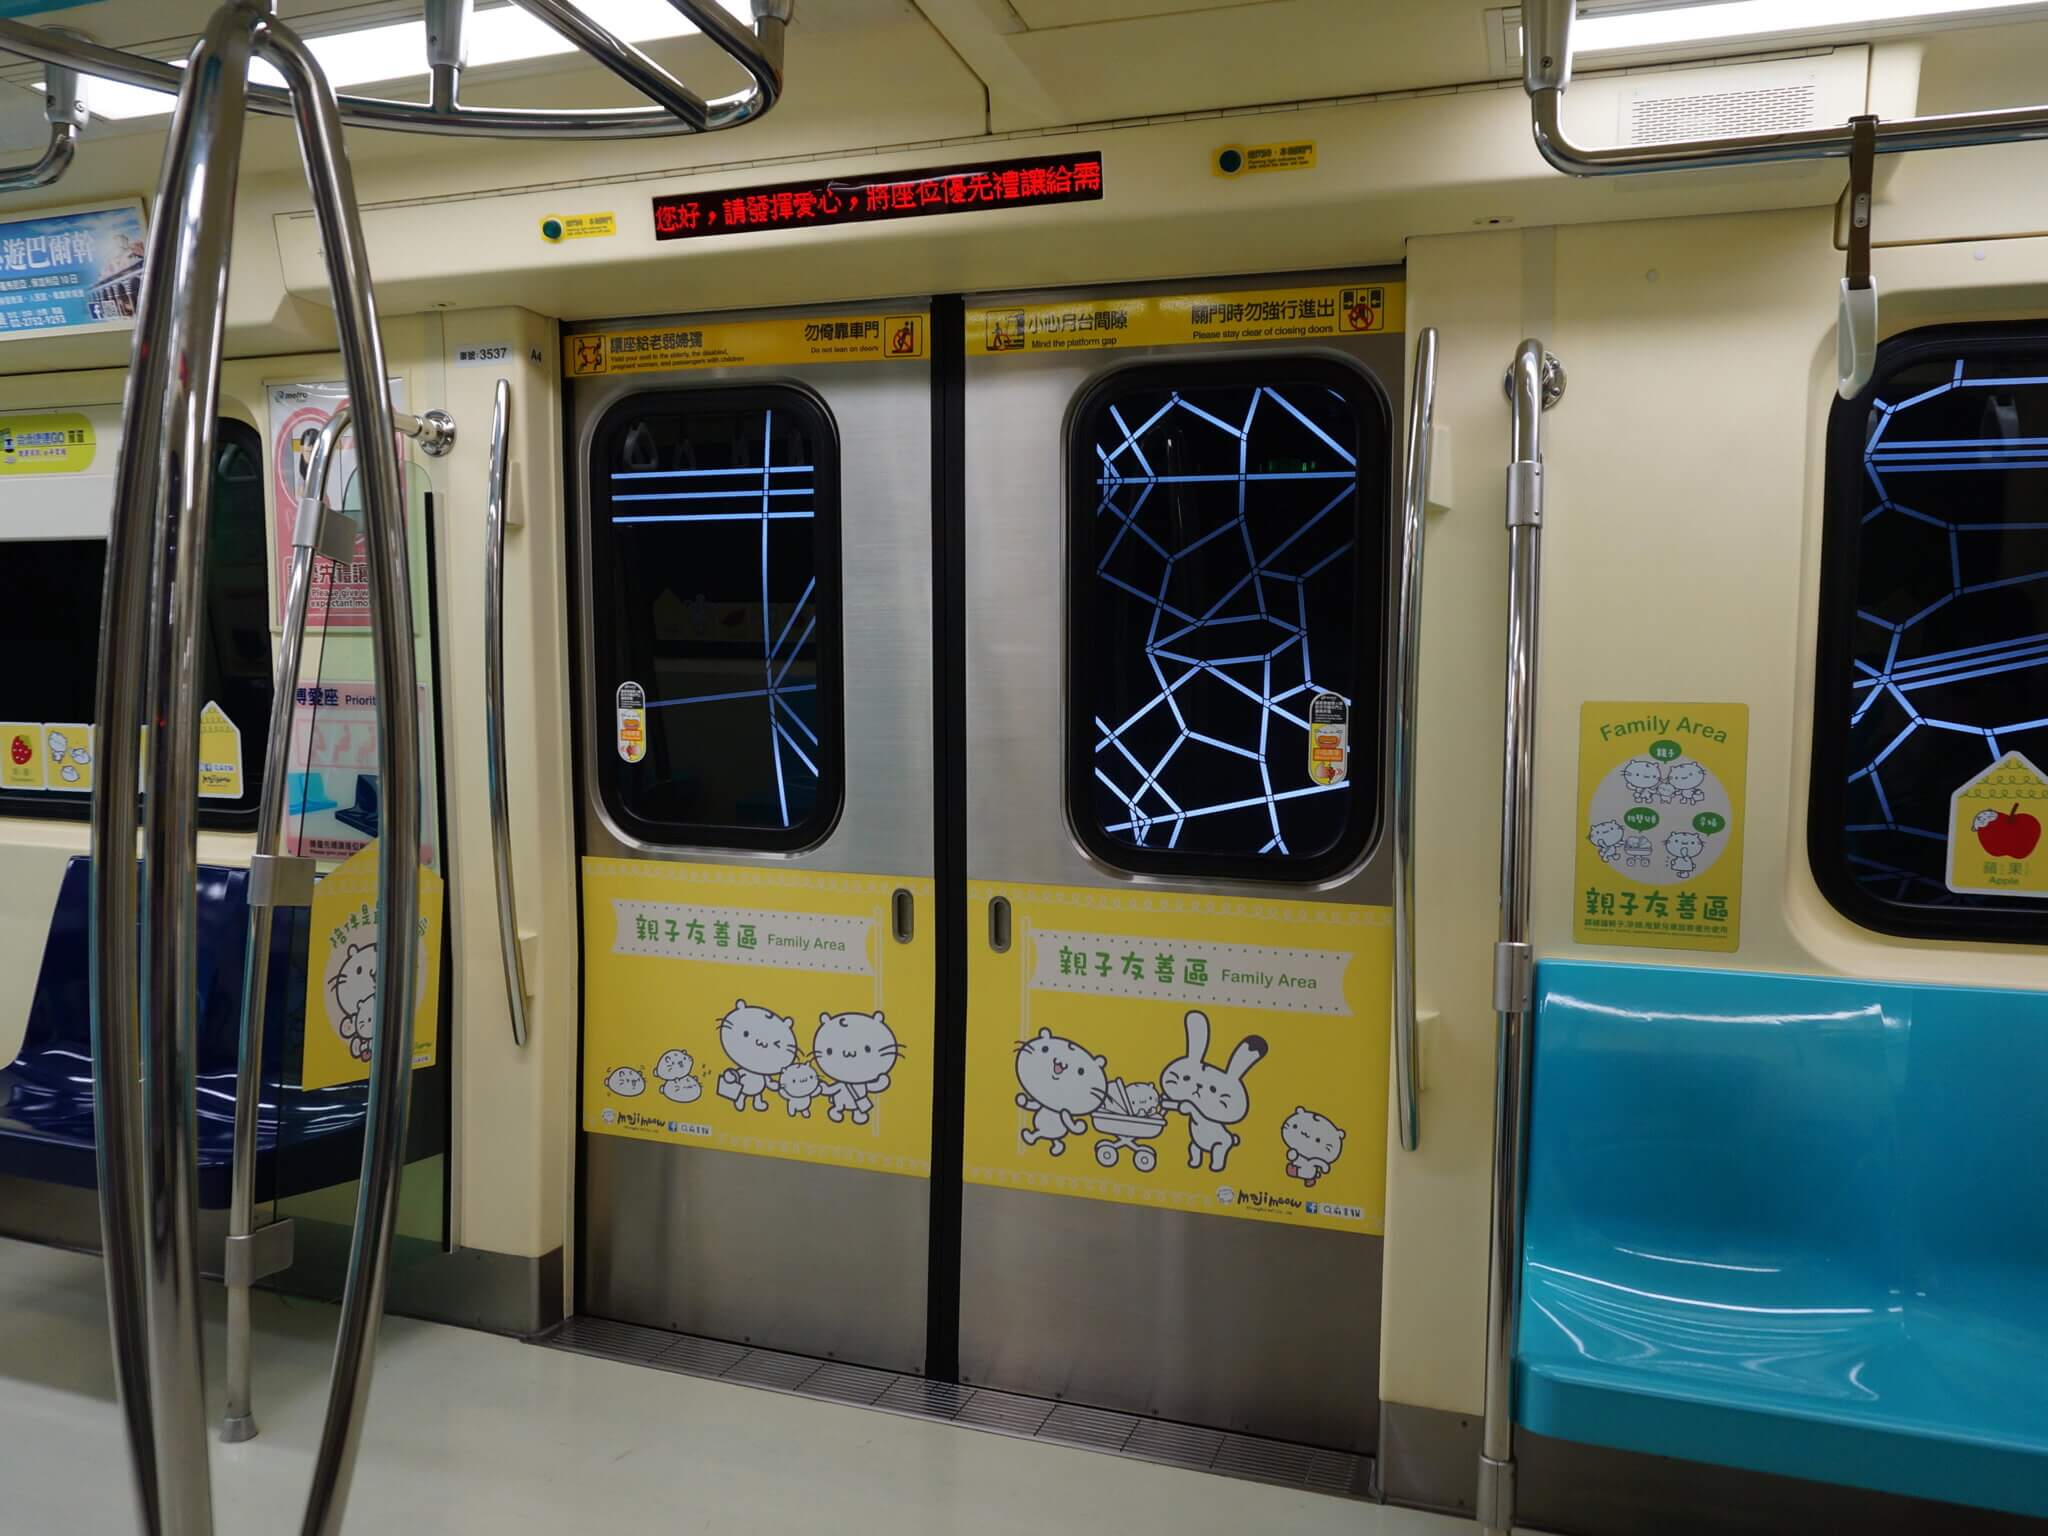 U-Bahn Innenansicht mit niedlichen Tiermotiven an Wänden und Türen